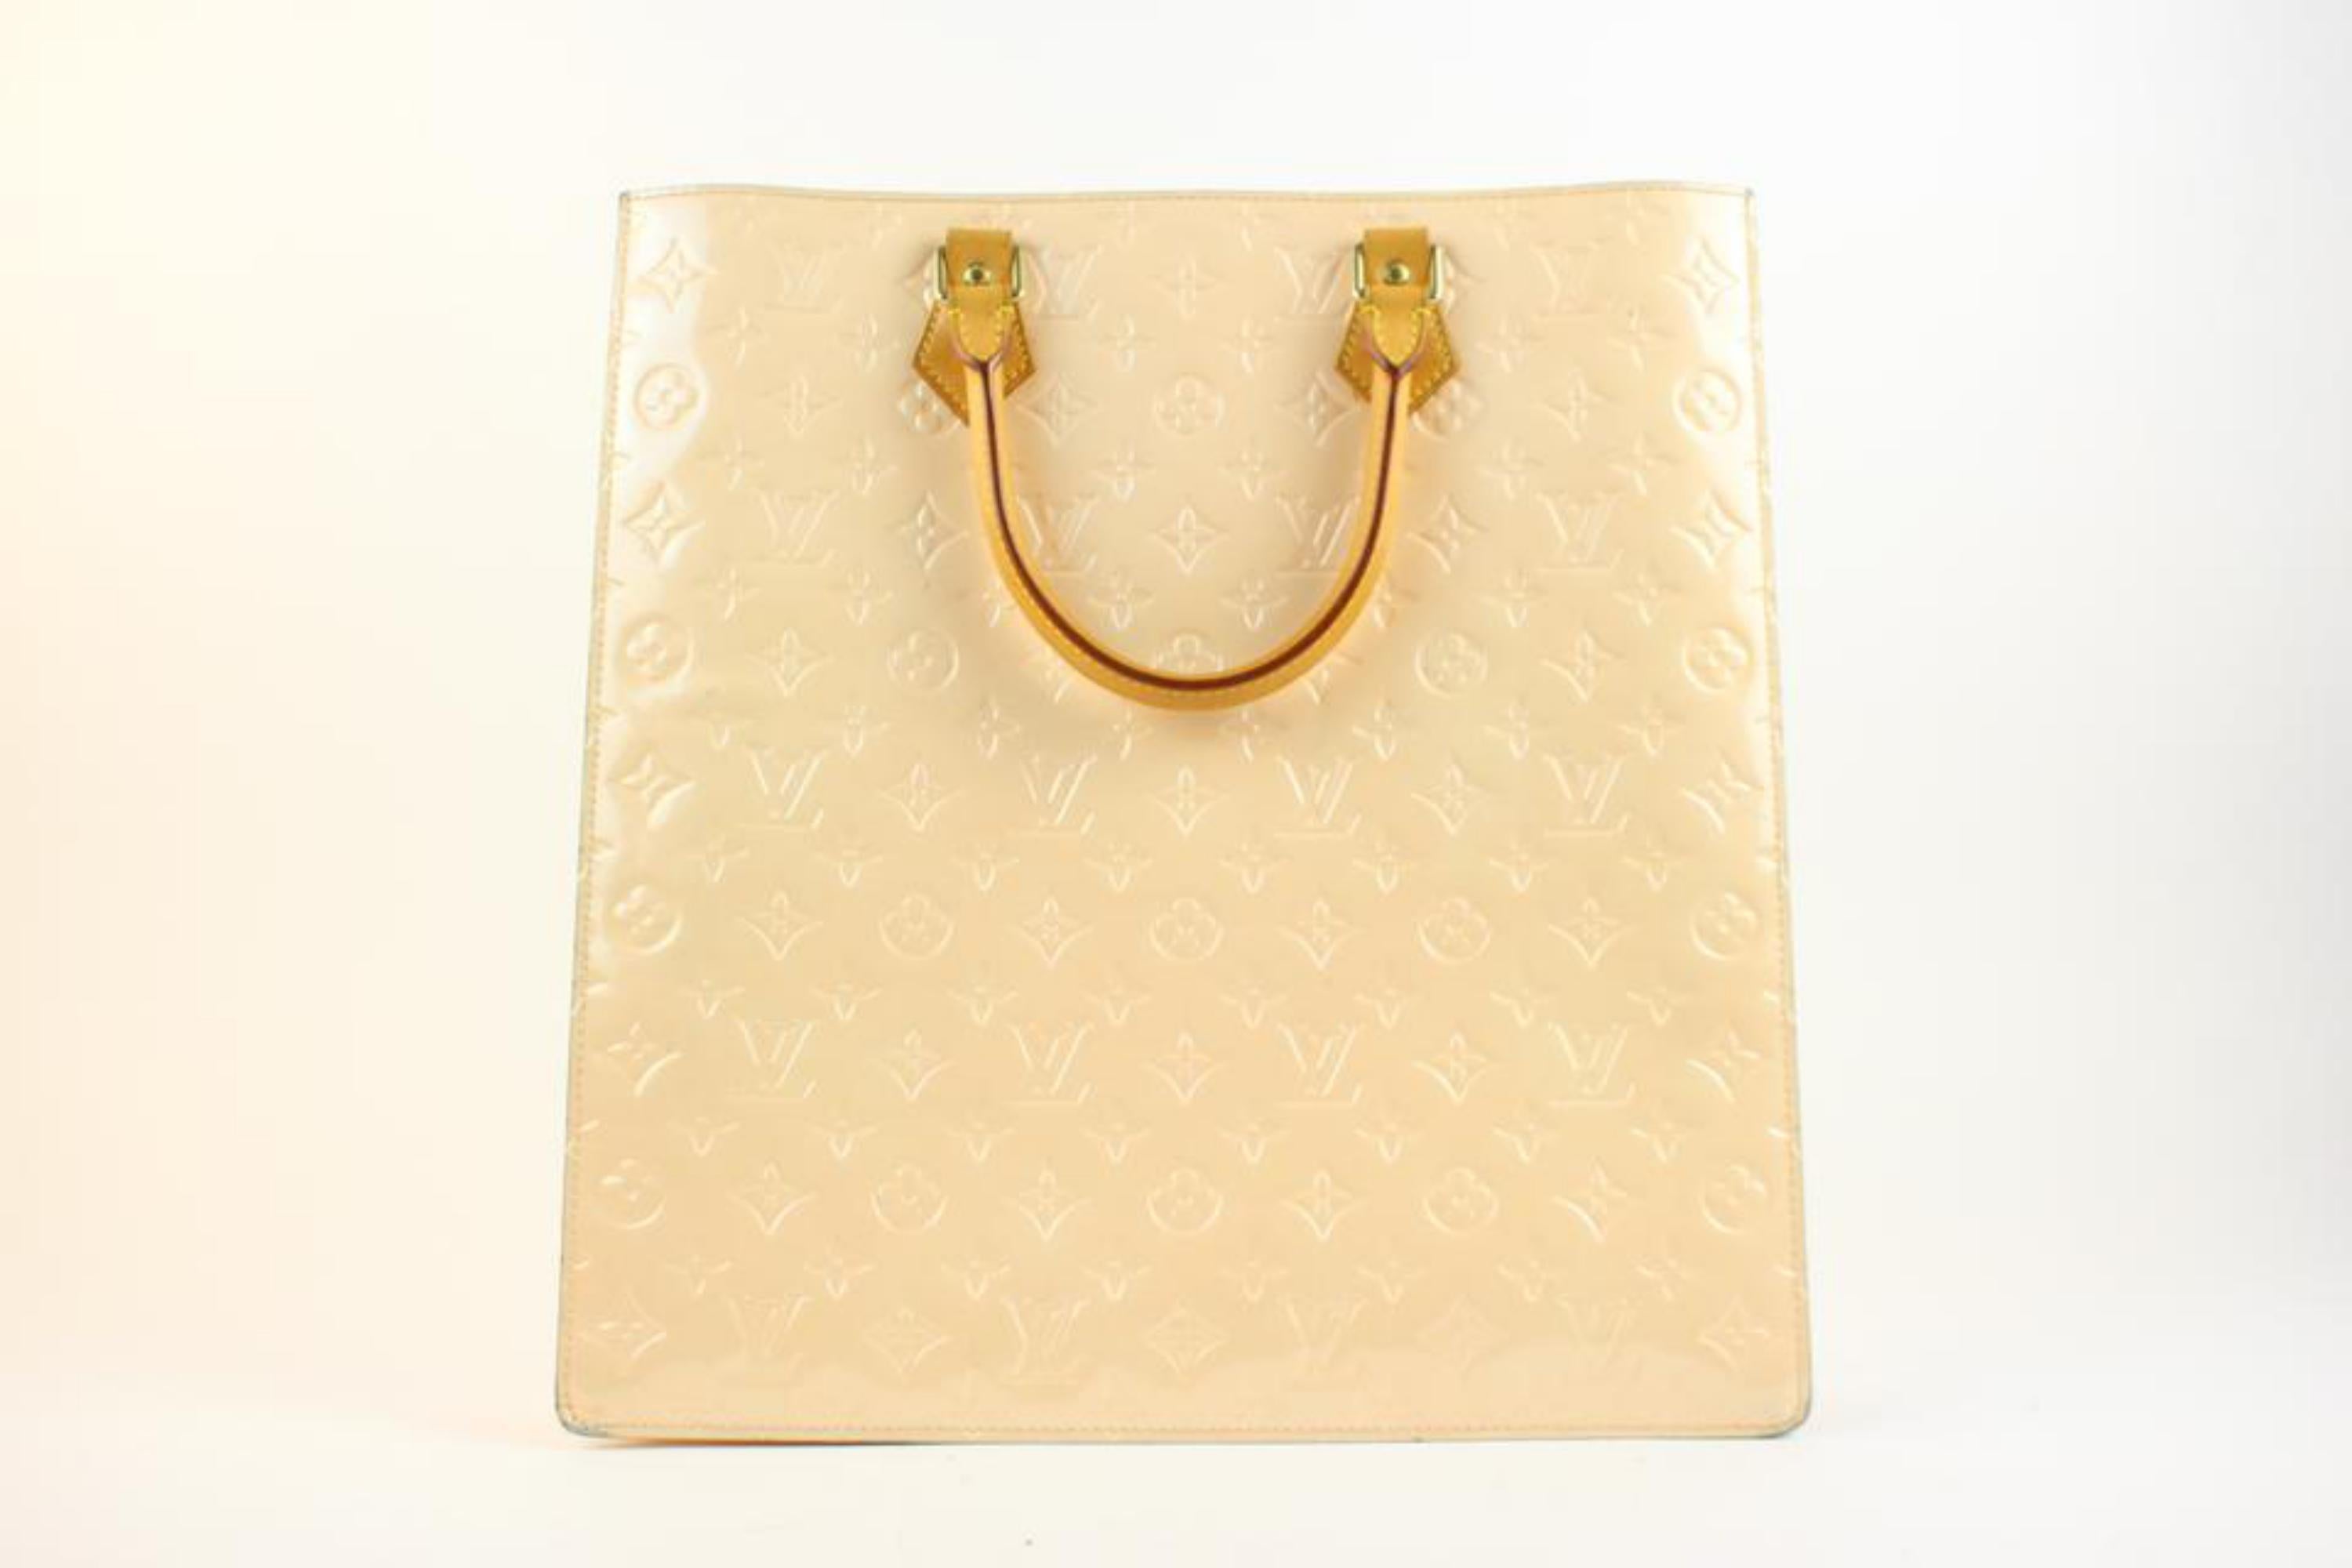 Pre-Owned Louis Vuitton Sac Plat NM Monogram Vernis Tote Bag